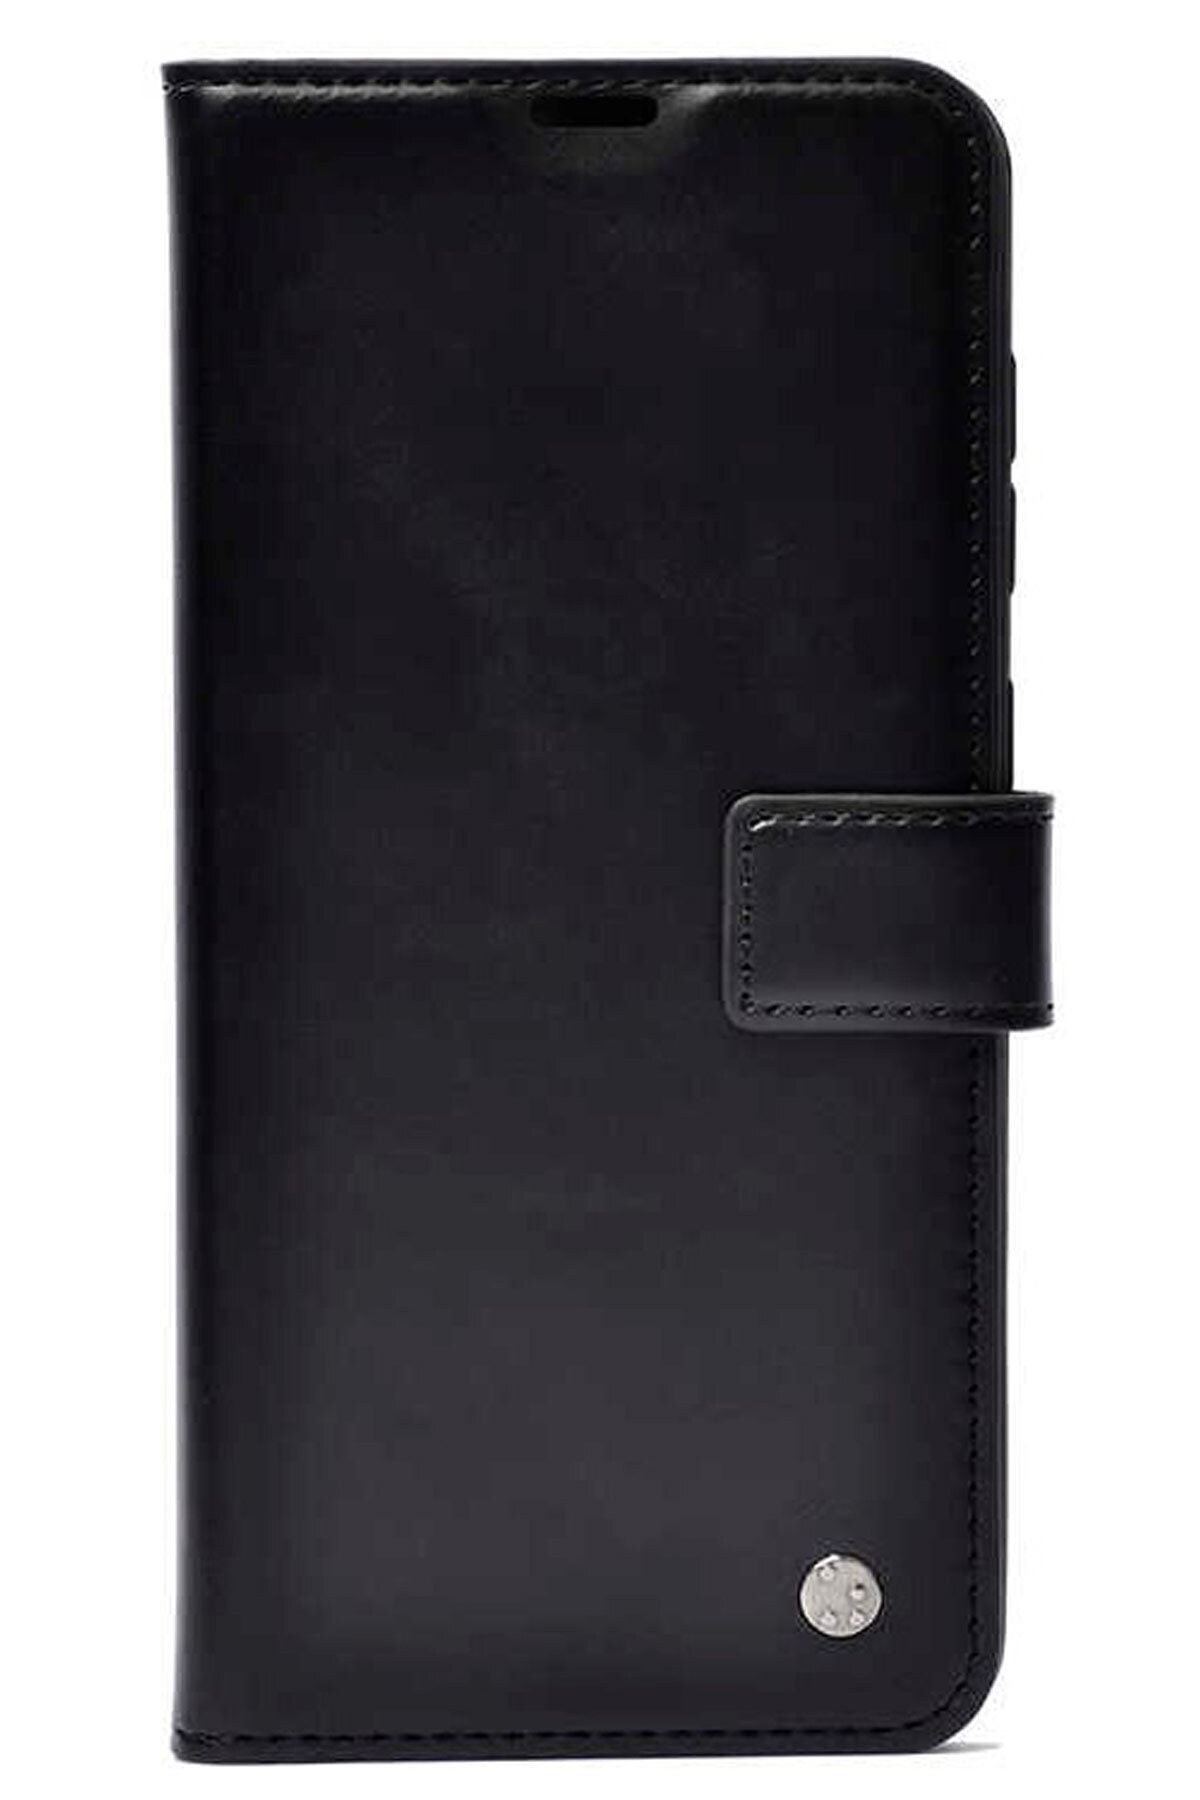 Apple A5 A9 2020 Uyumlu Kılıf Kartlı Cüzdanlı Standlı Kapaklı Deri Siyah Stylus Kalem